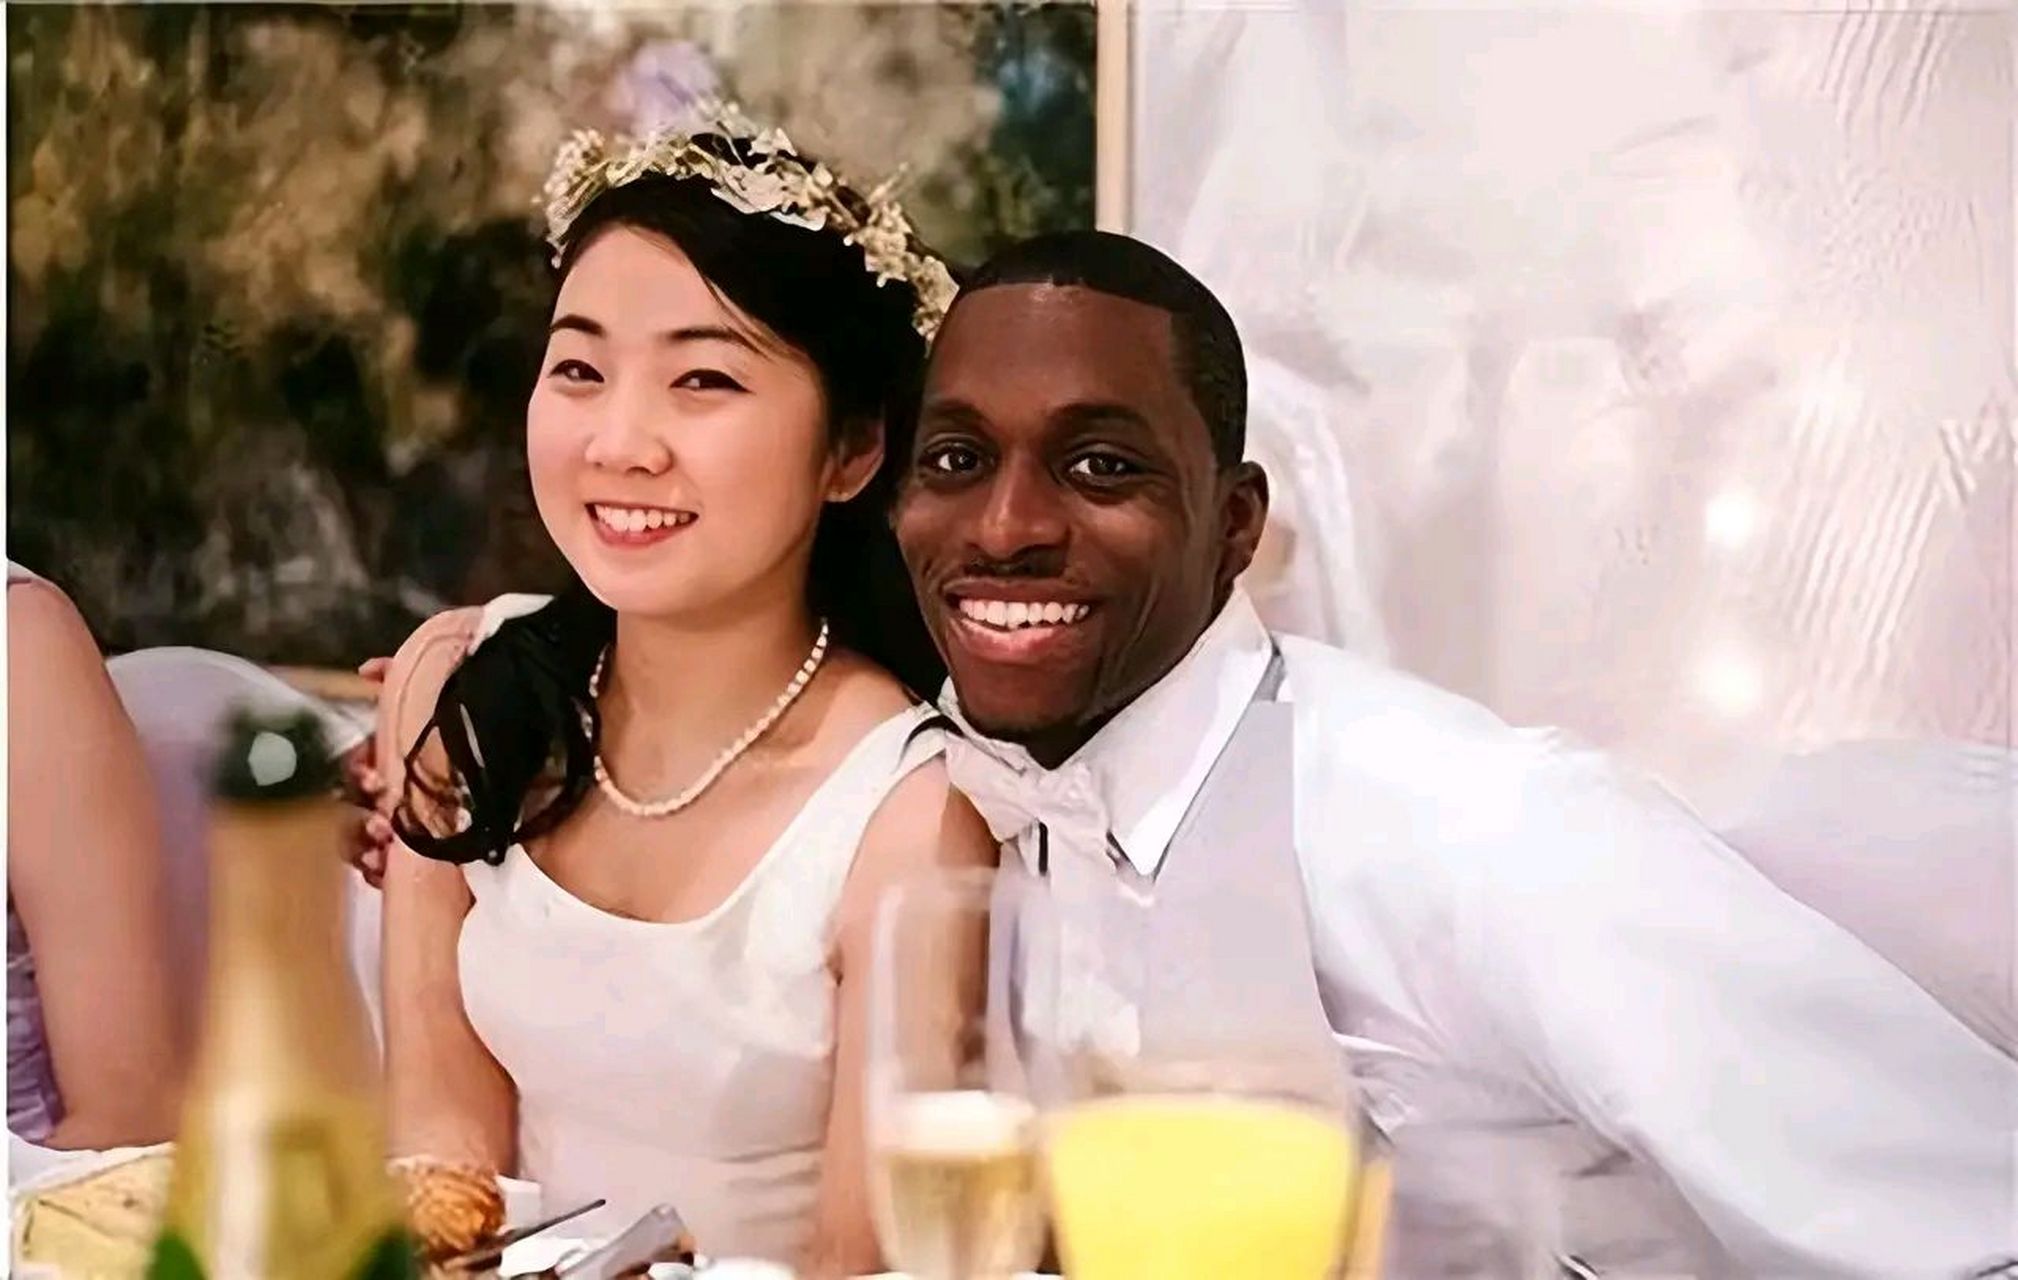 那些嫁给黑人的中国女孩,后来都怎么样了呢?其实大致上是这3种情况